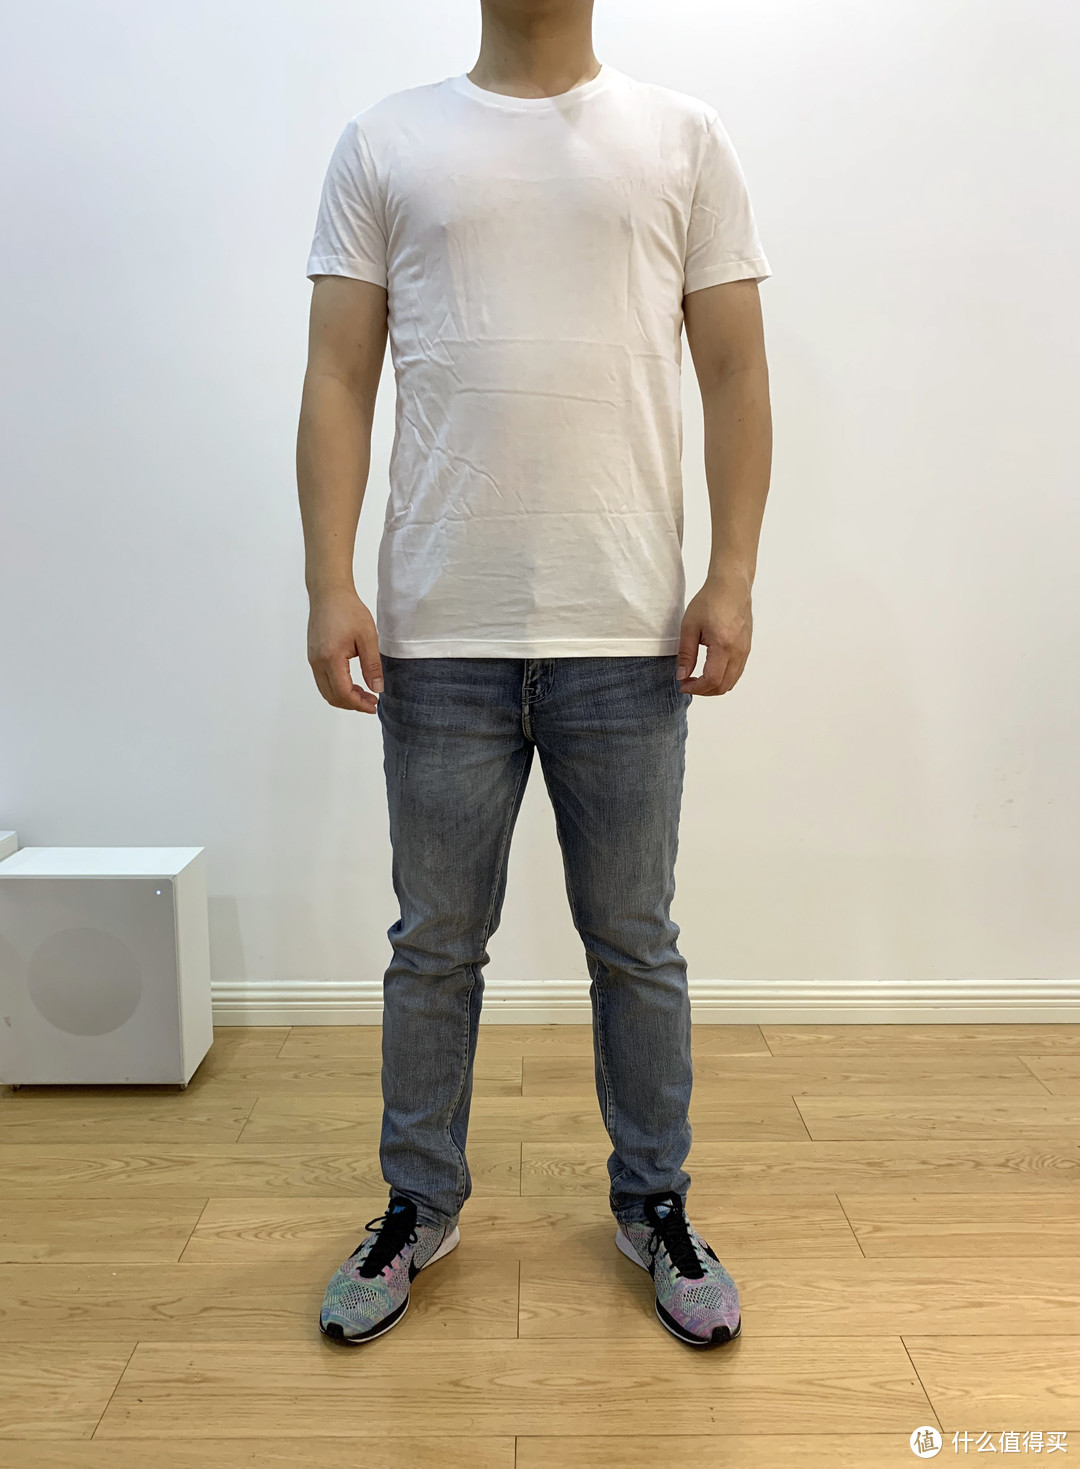 一件白T恤的对决 Ⅱ：LATIV 诚衣 VS MAXWIN 马威 白色T恤对比评测